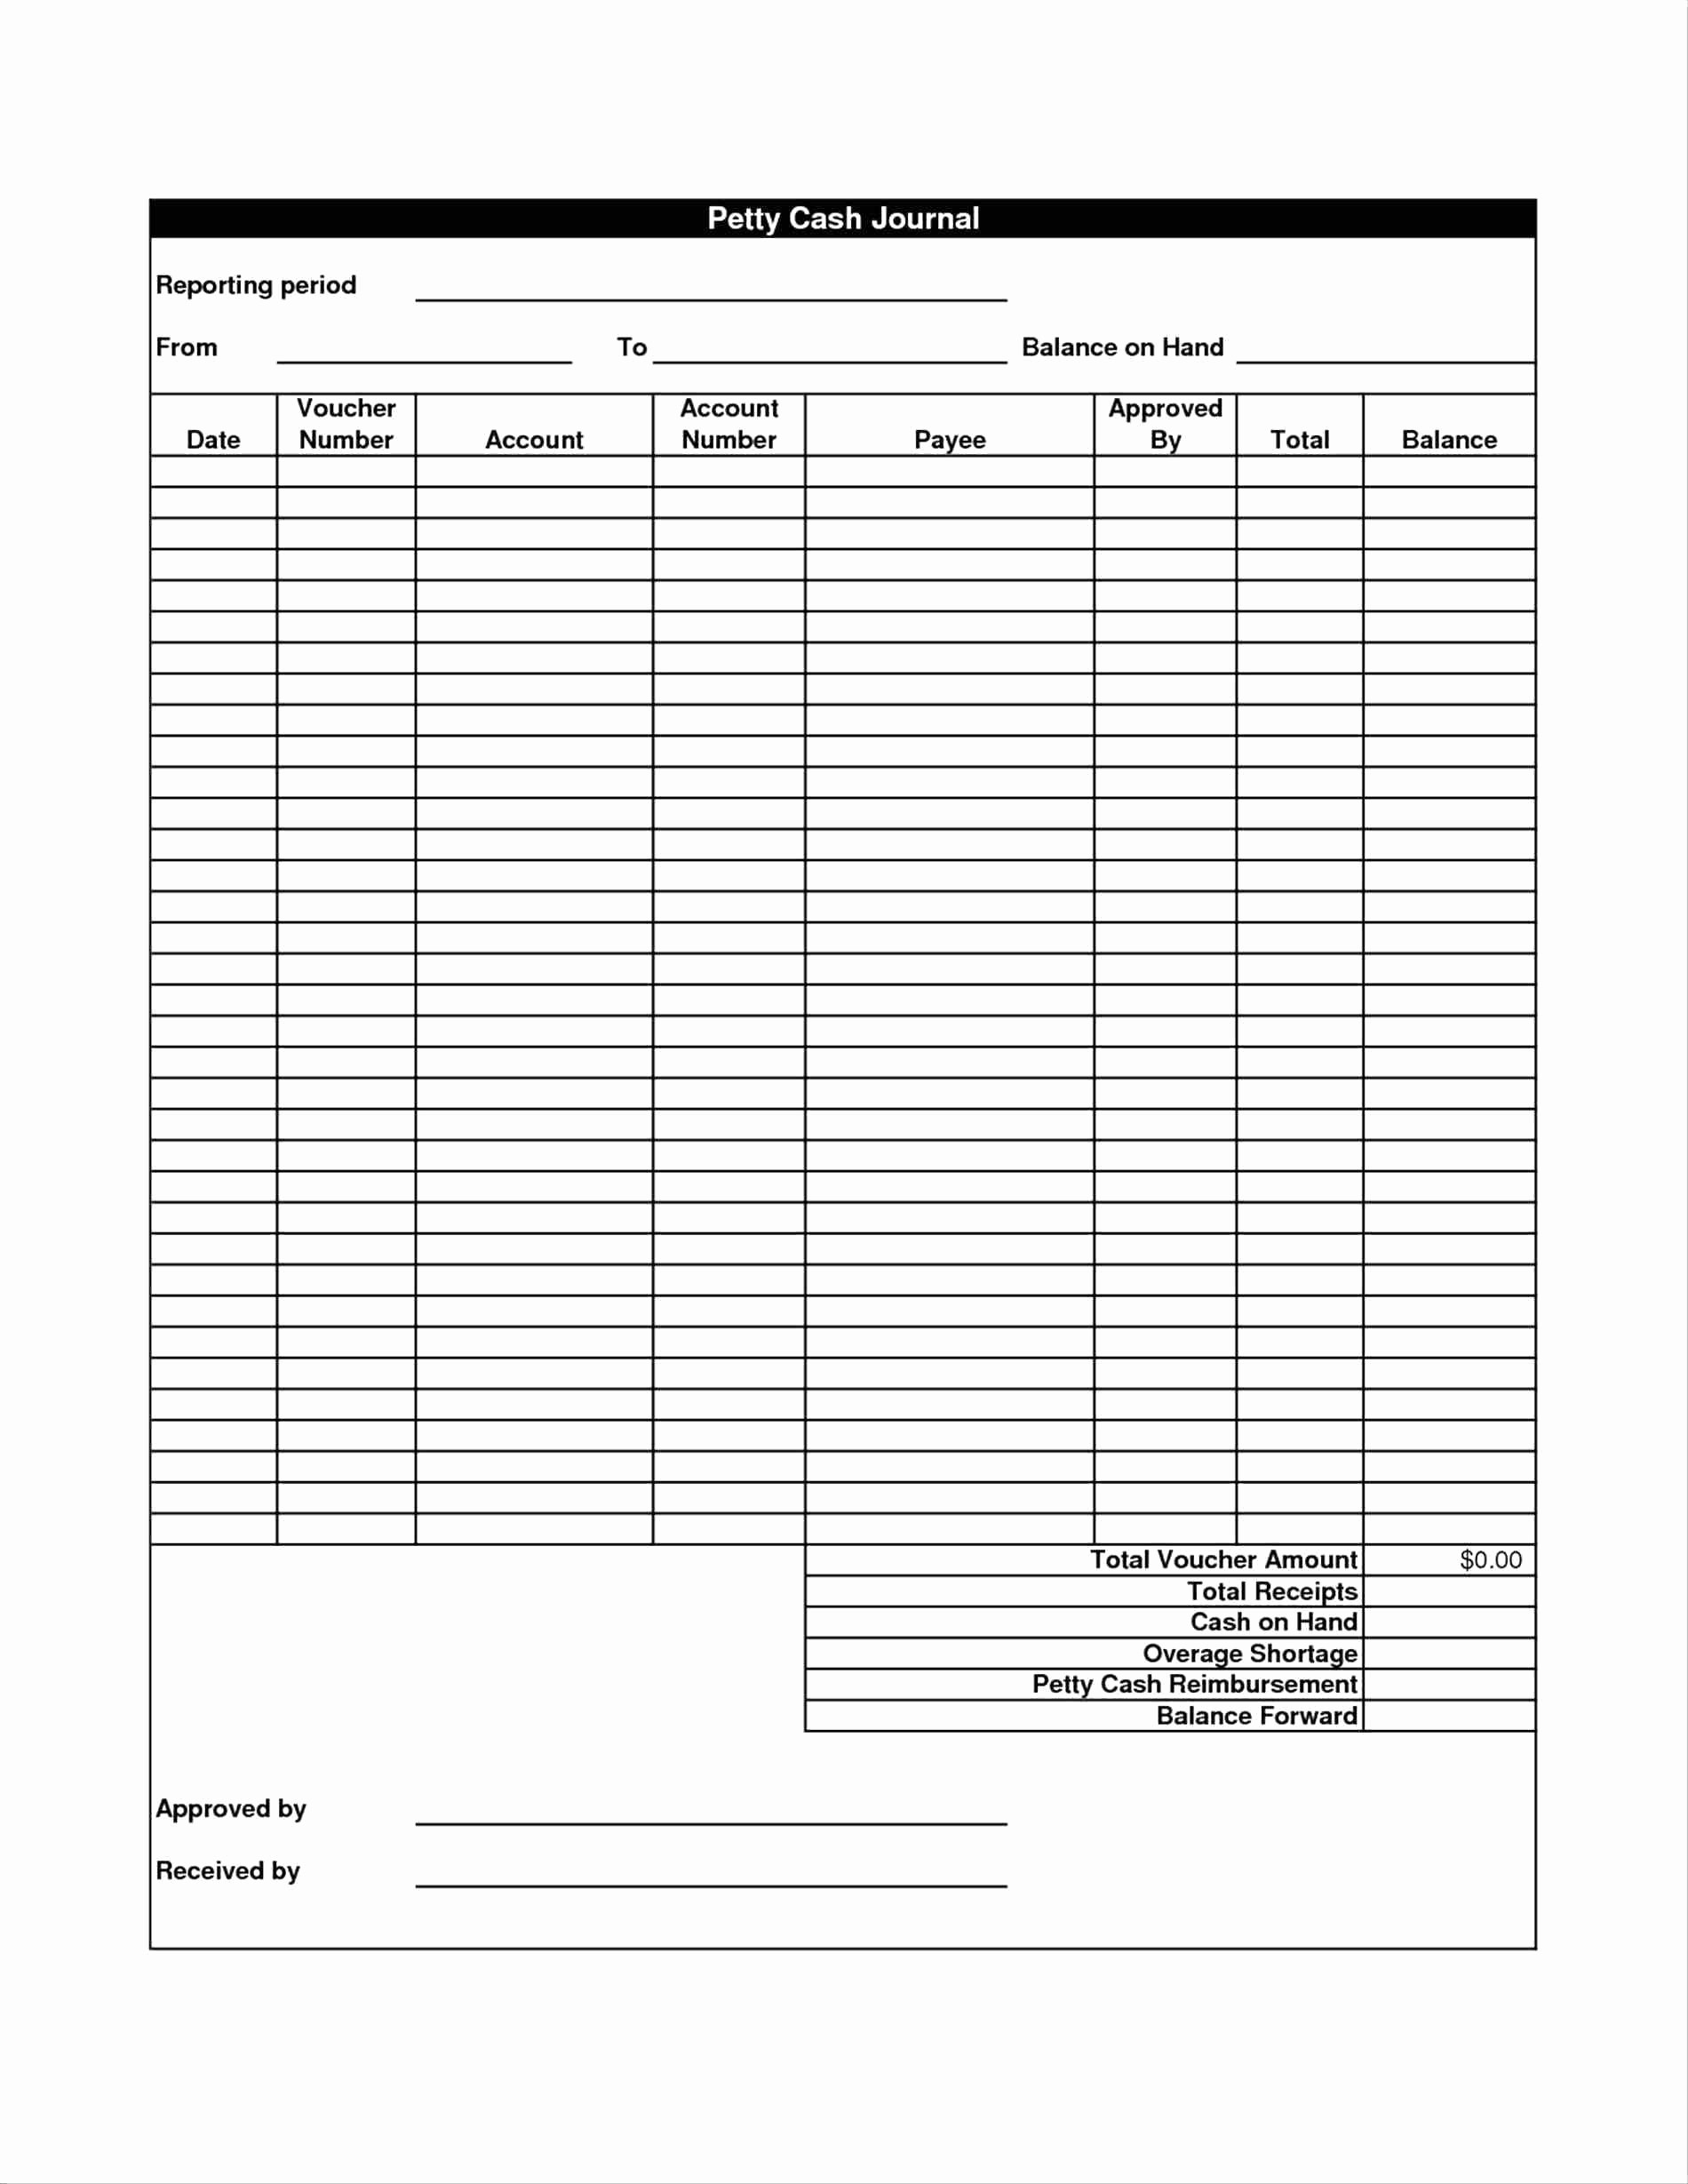 Cash Disbursement Journal Template Excel Best Of Petty Cash Disbursement form Template